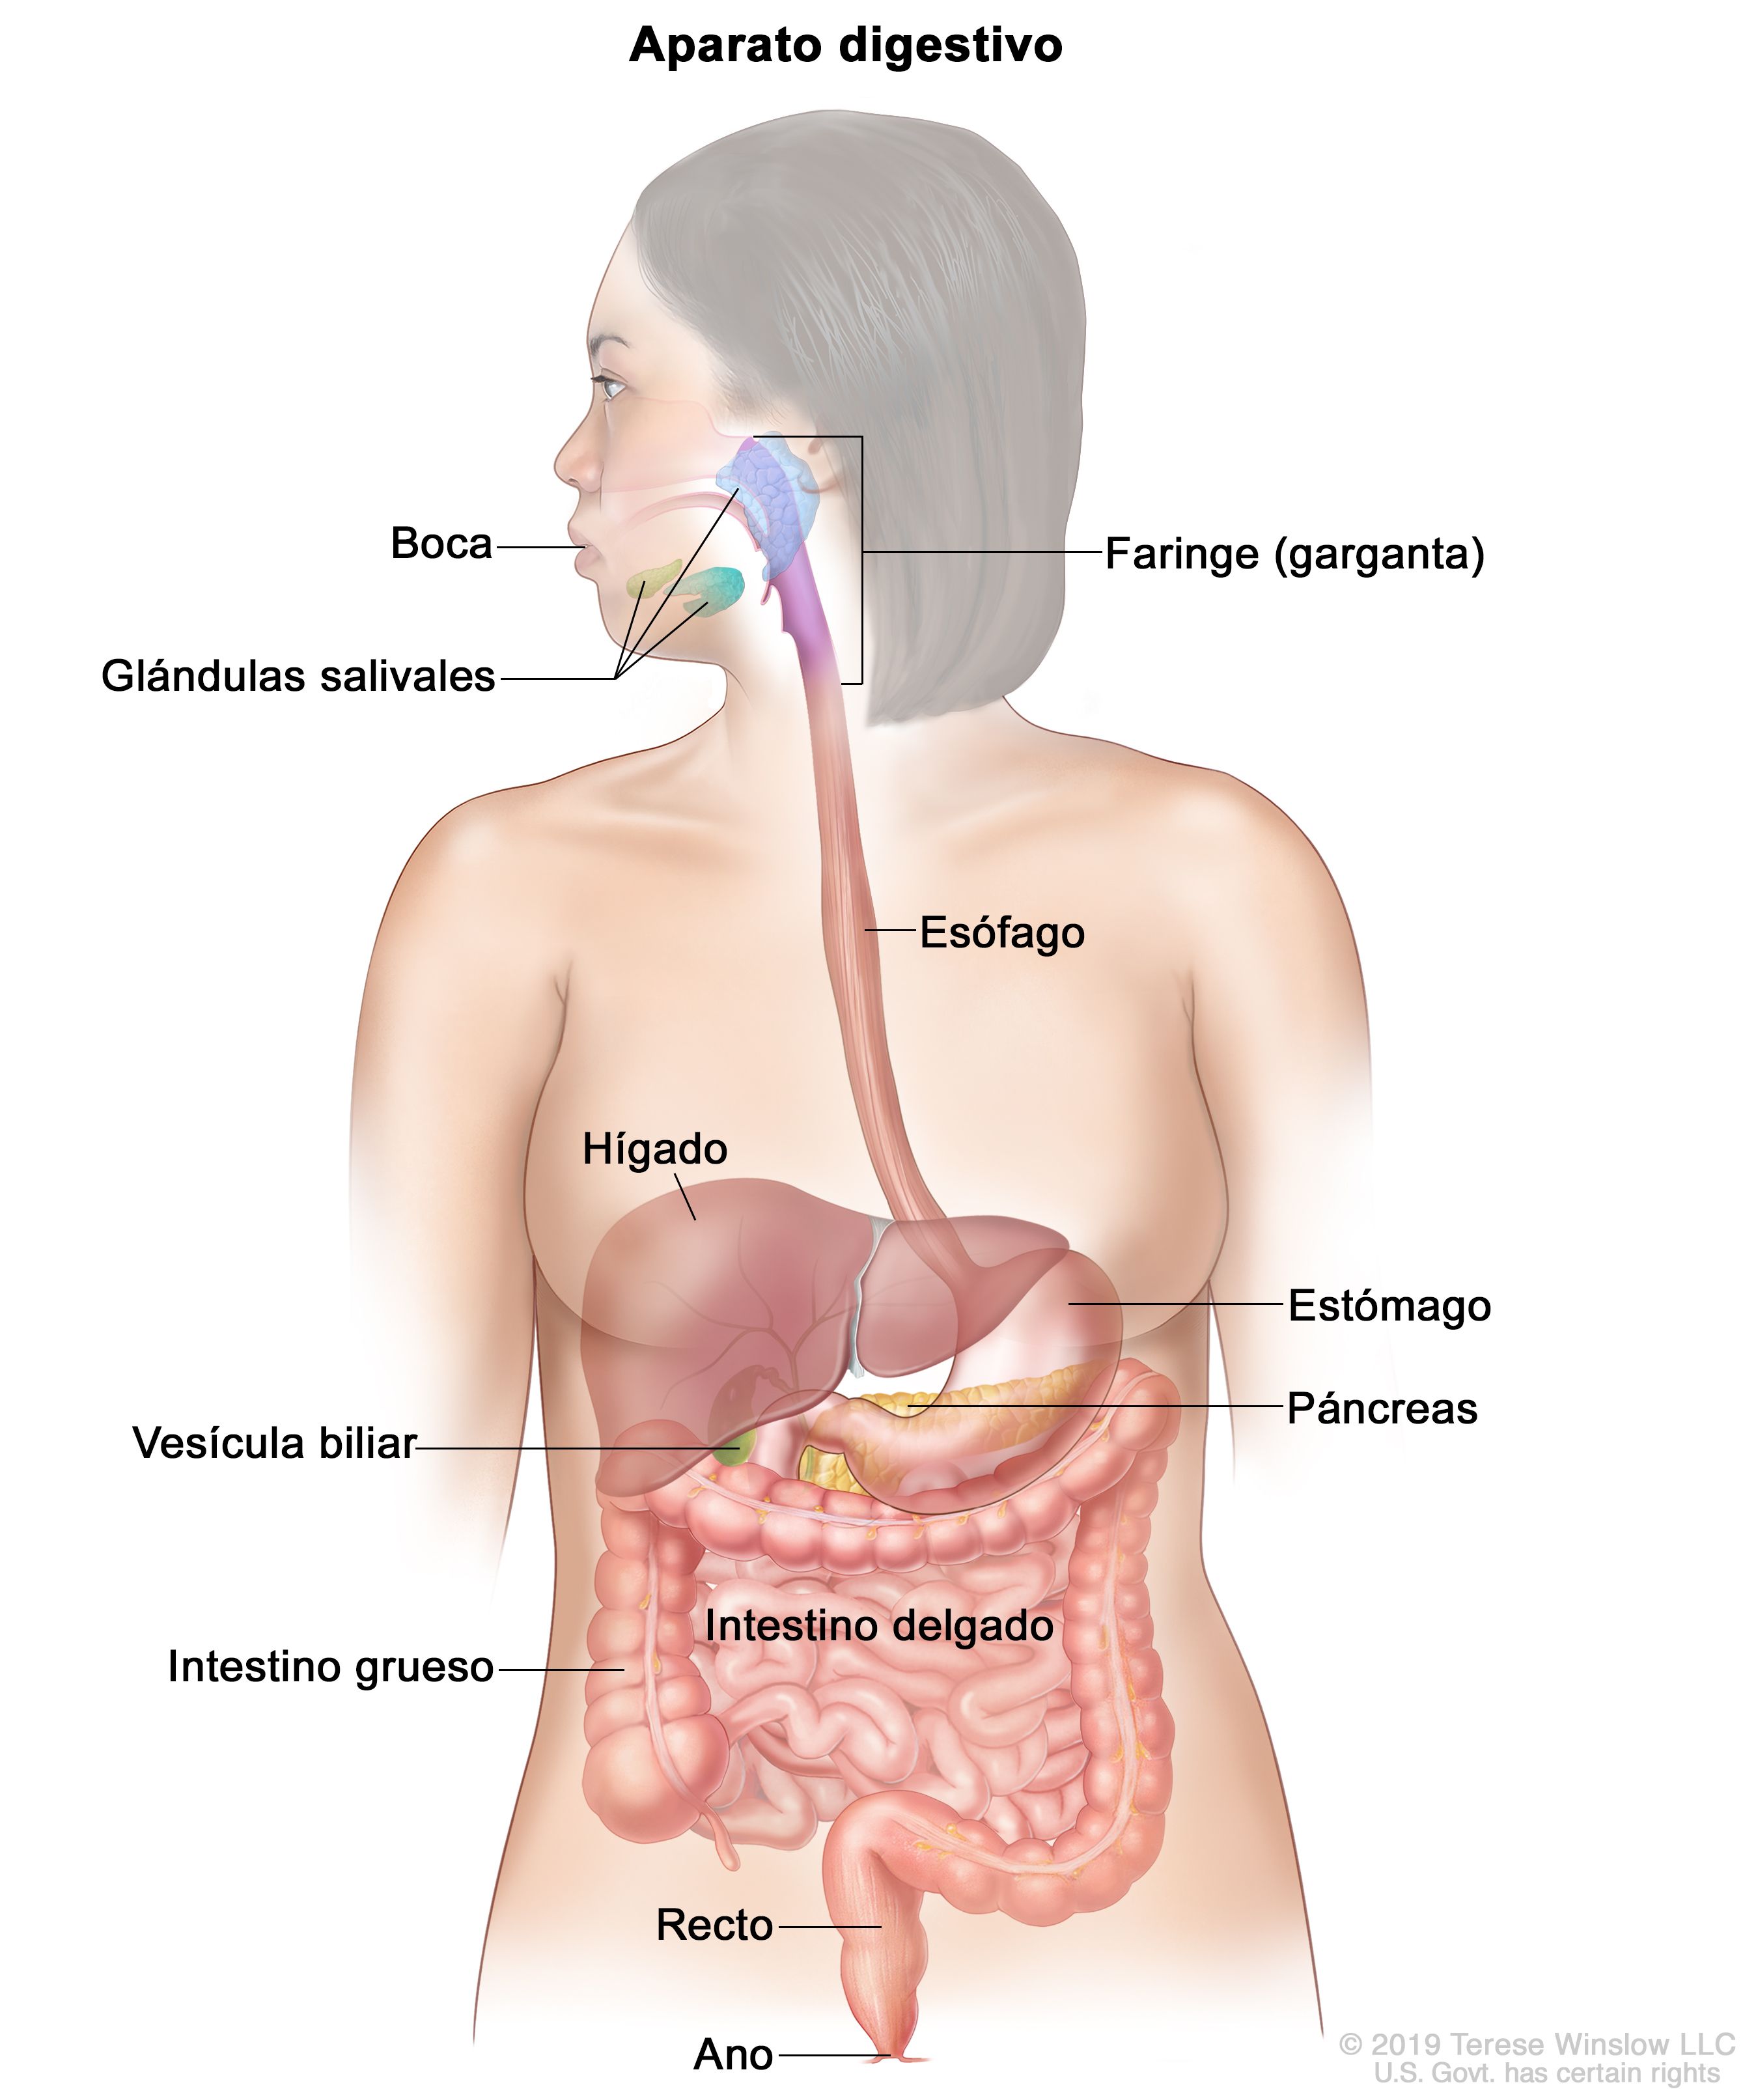 Definición de aparato digestivo - Diccionario cáncer NCI - NCI